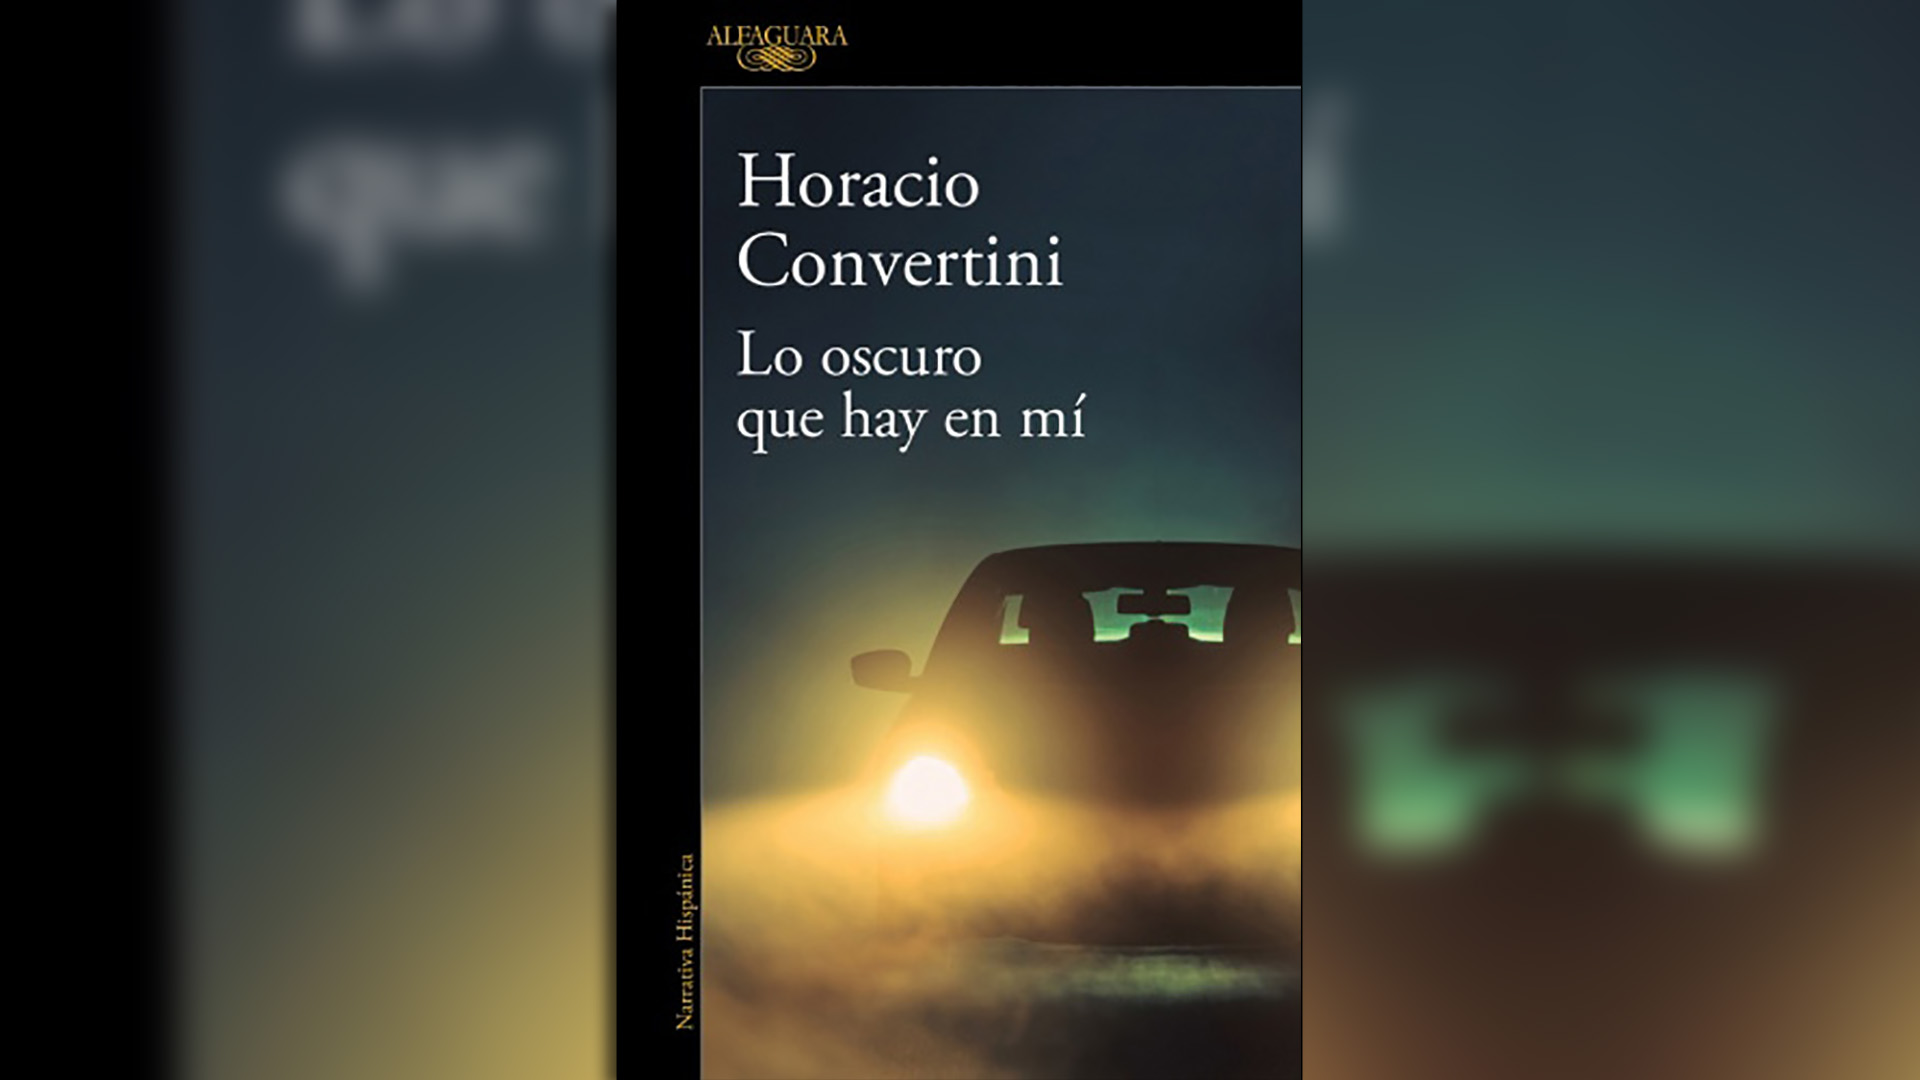 , “Lo oscuro que hay en mí” (Alfaguara), de Horacio Convertini